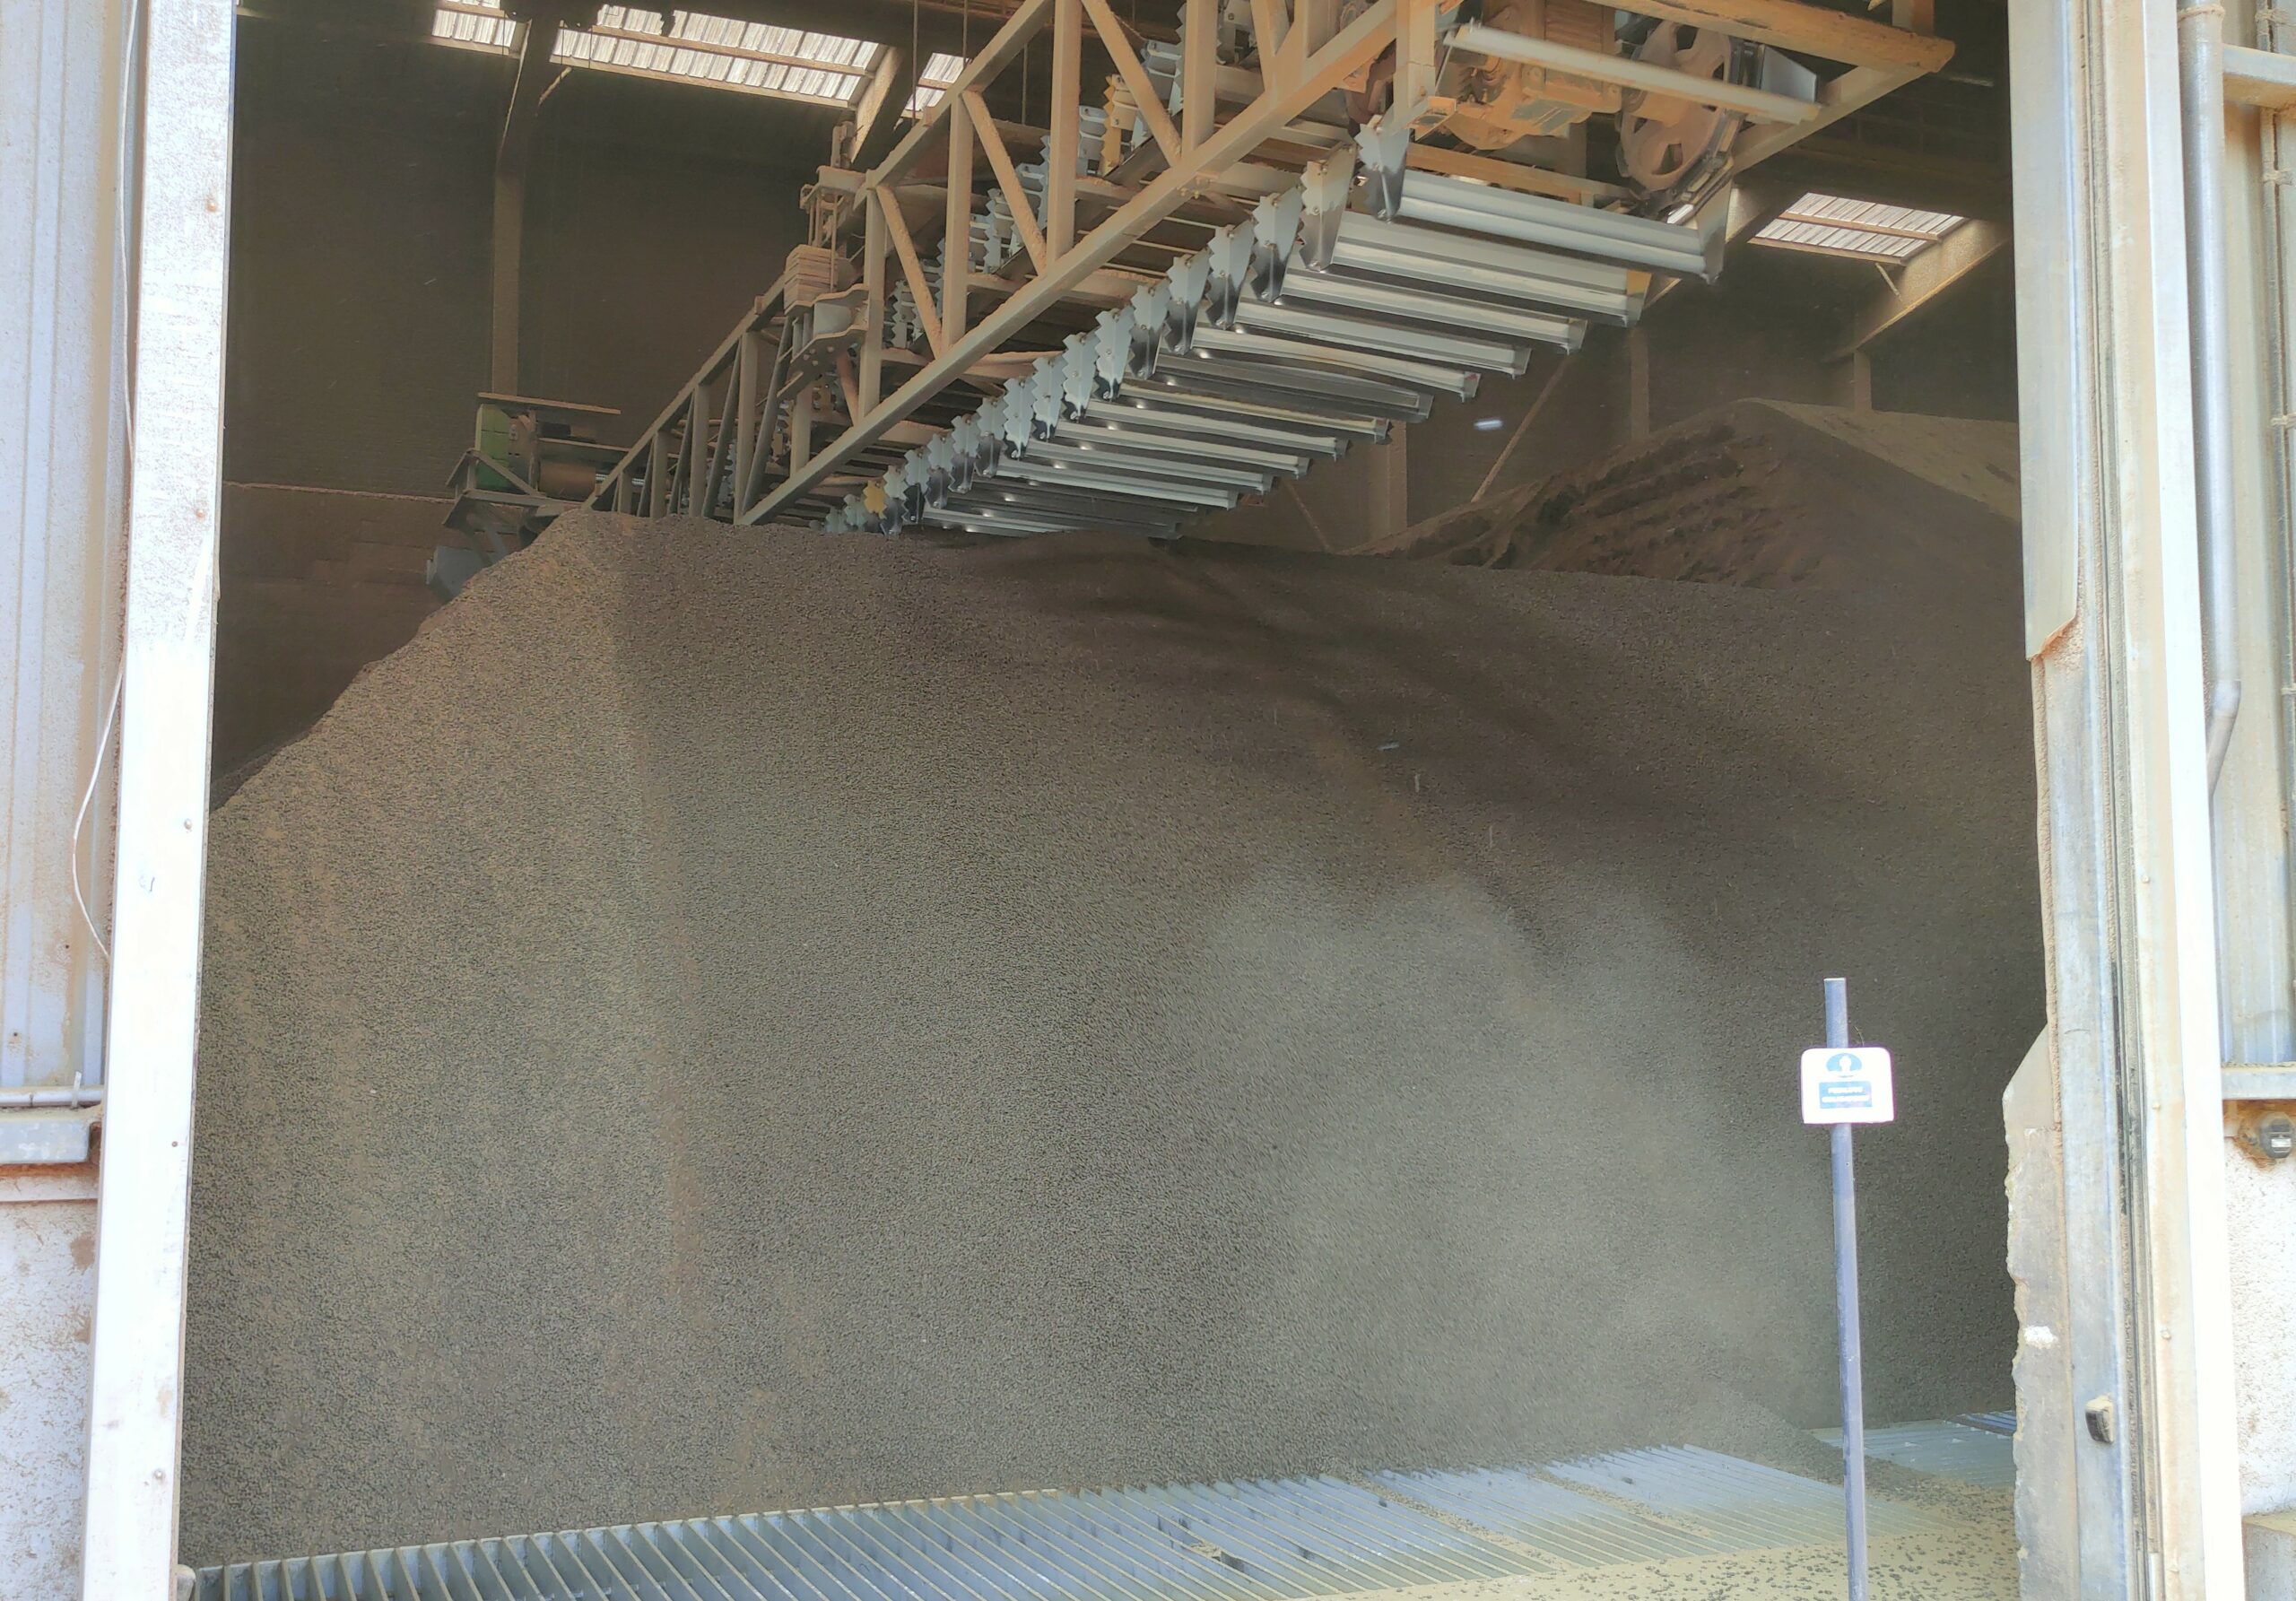 Un million de tonnes de graines de colza passent par Le Mériot chaque année.